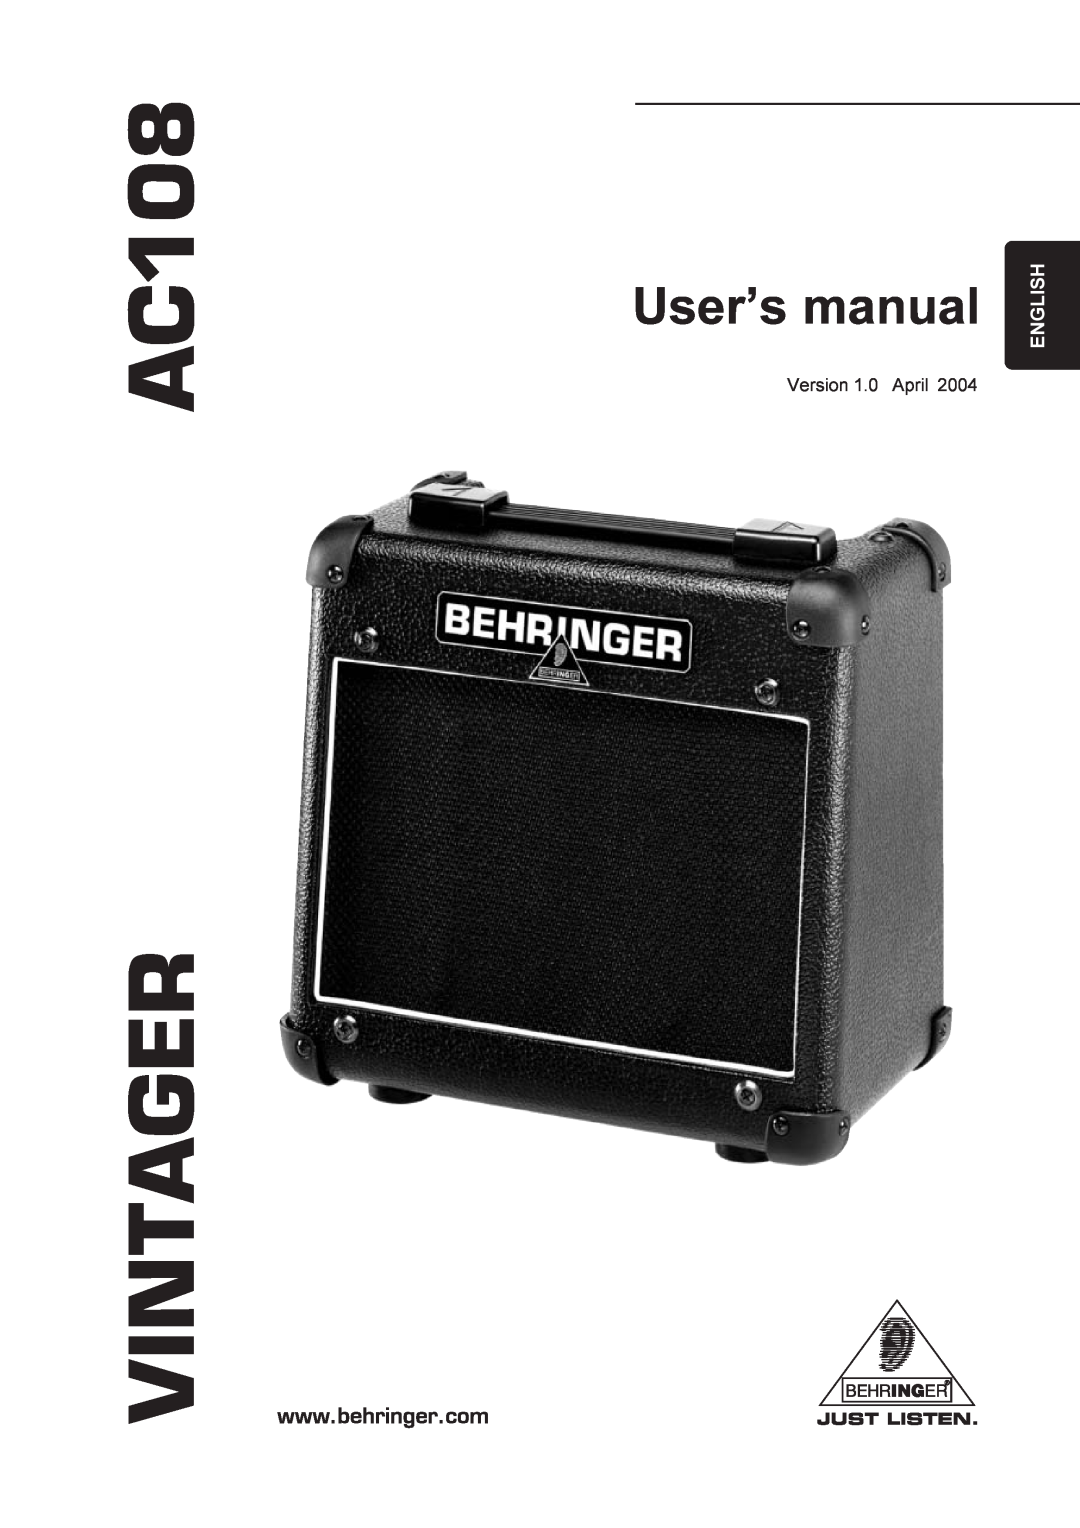 Behringer manual Version 1.0 April, AC108 VINTAGER, English 